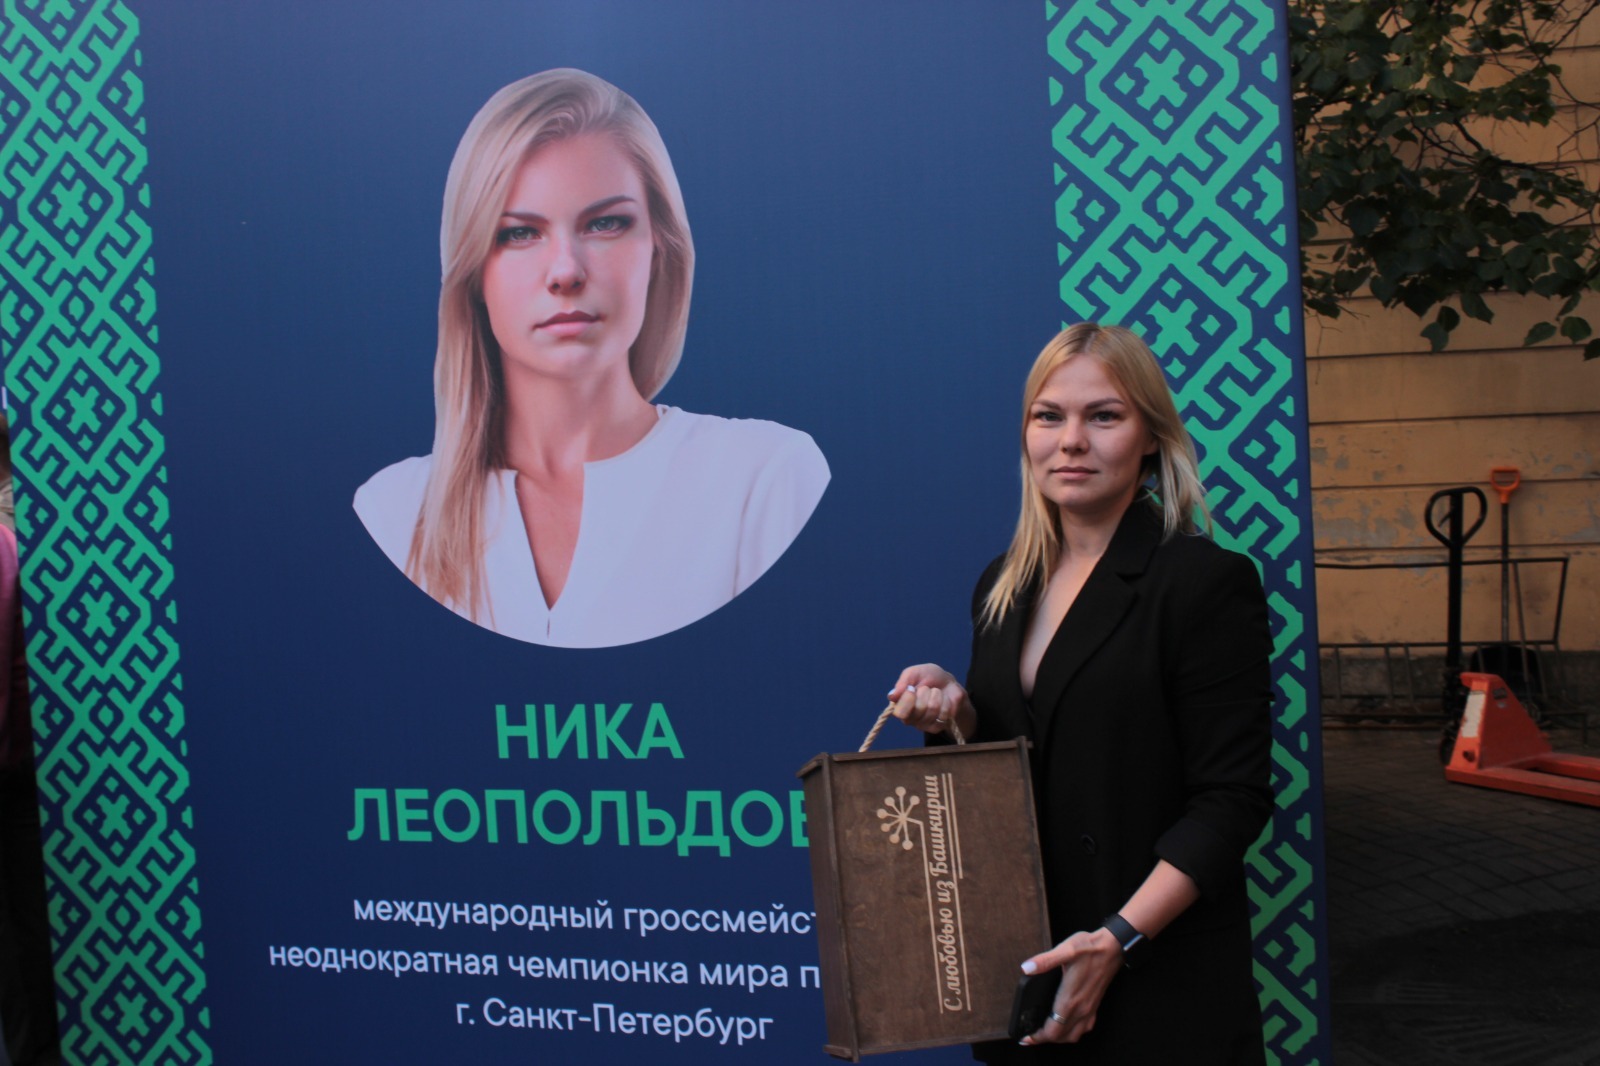 Тамара Тансыккужина провела сеанс одновременной игры в шашки в Санкт-Петербурге